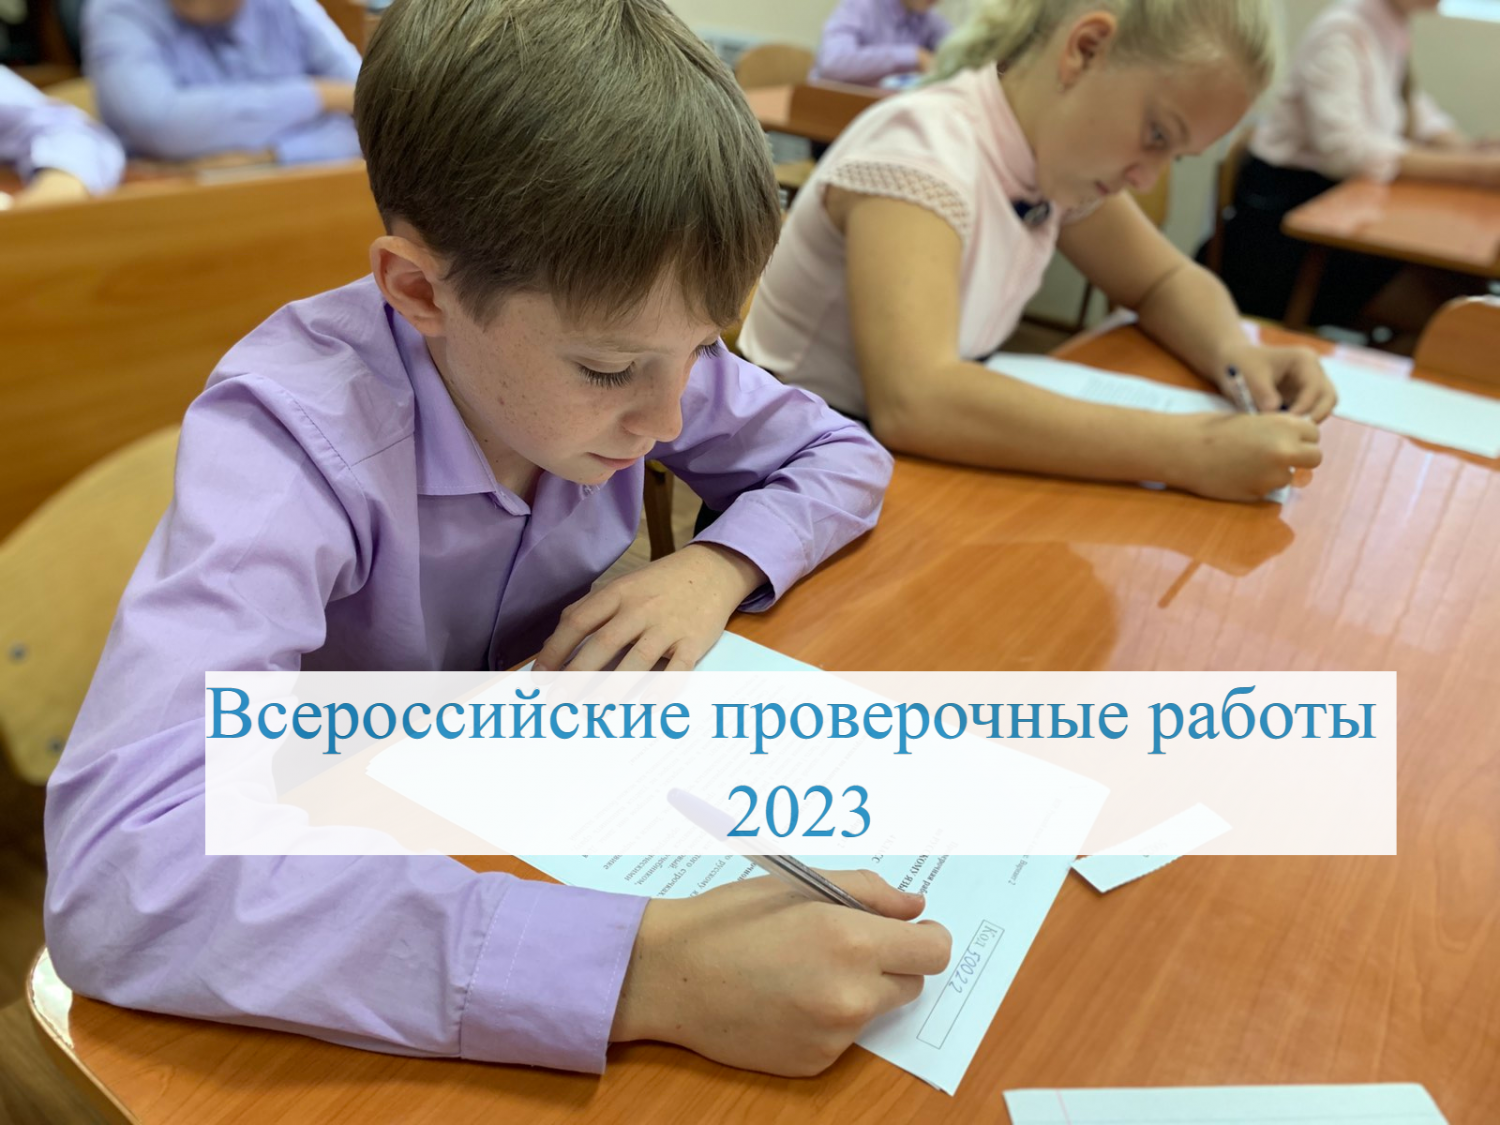 Всероссийские проверочные работы как инструмент внутренней системы оценки качества образования